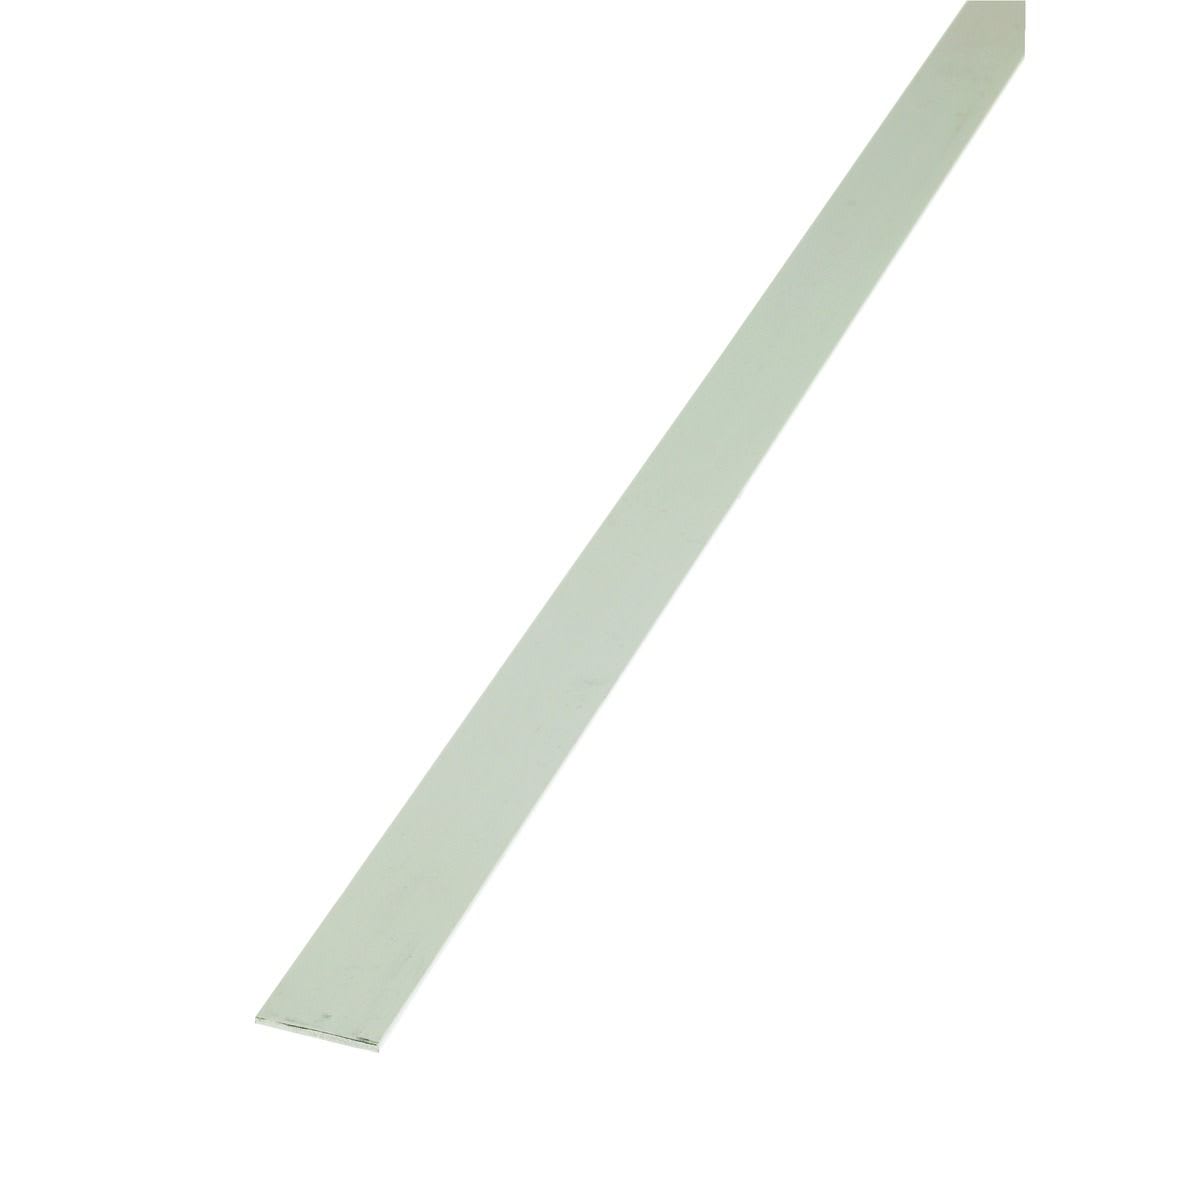 Wickes 15.5mm Multi-Purpose Flat Bar - White PVCu